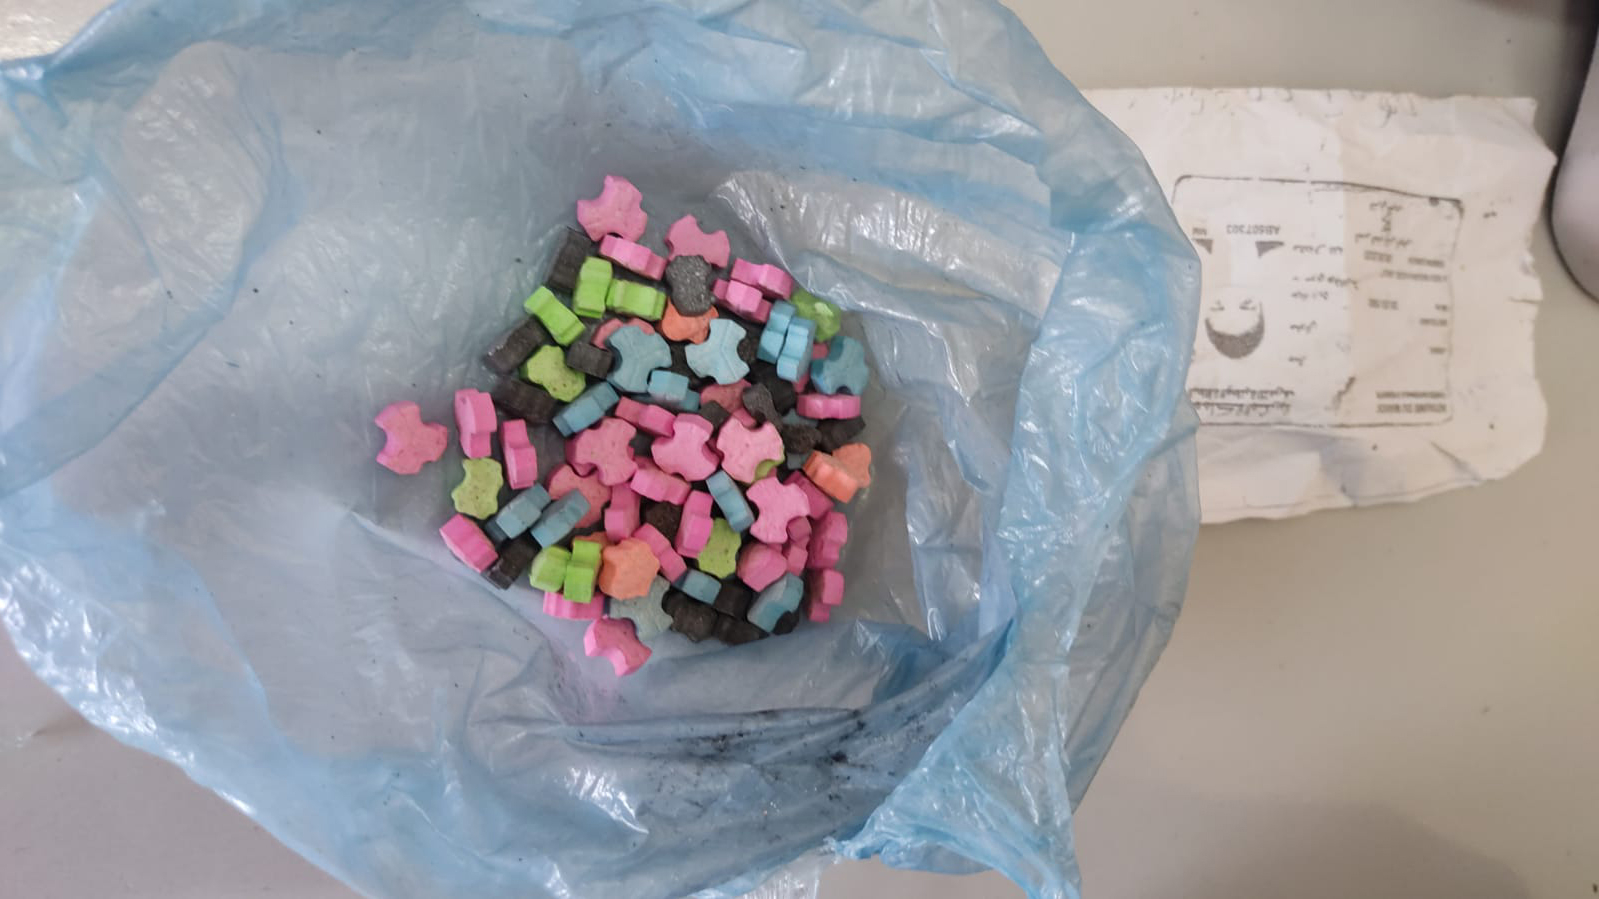 L’opération de perquisition menée au domicile d'un suspect a abouti à la saisie de 5.437 comprimés de psychotropes (2.700 comprimés du Nordoz, 1.485 comprimés de Rivotril, 1.170 comprimés de Zépam et 82 comprimés d’Ecstasy).
